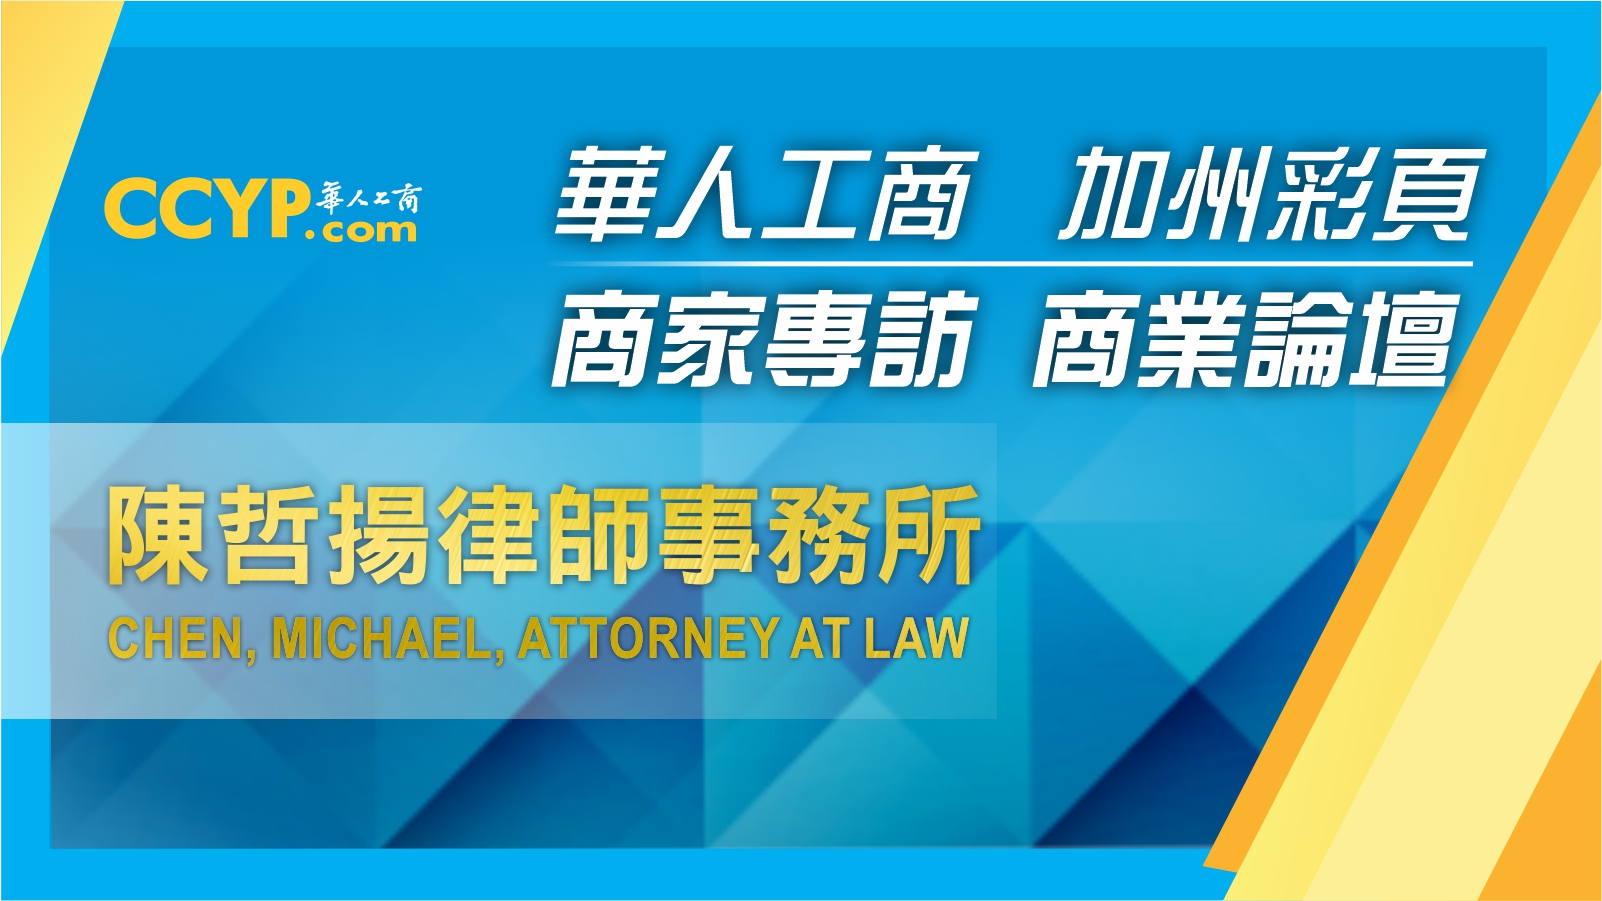 華人工商加州彩頁商家專訪 | Law Office of Michael Chen 陳哲揚律師事務所